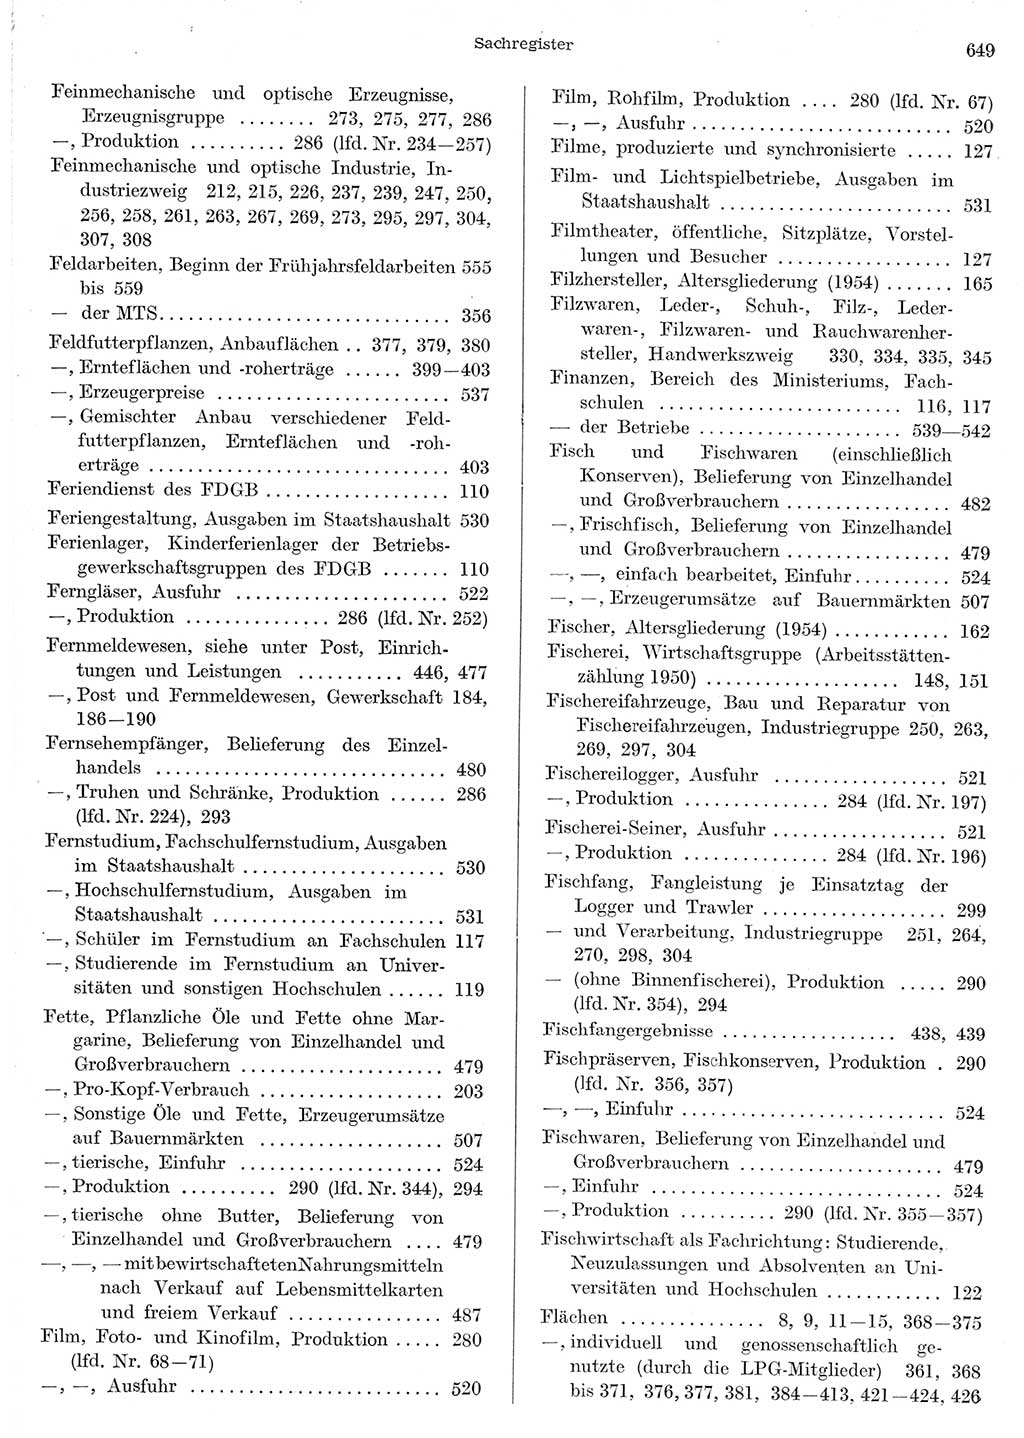 Statistisches Jahrbuch der Deutschen Demokratischen Republik (DDR) 1956, Seite 649 (Stat. Jb. DDR 1956, S. 649)